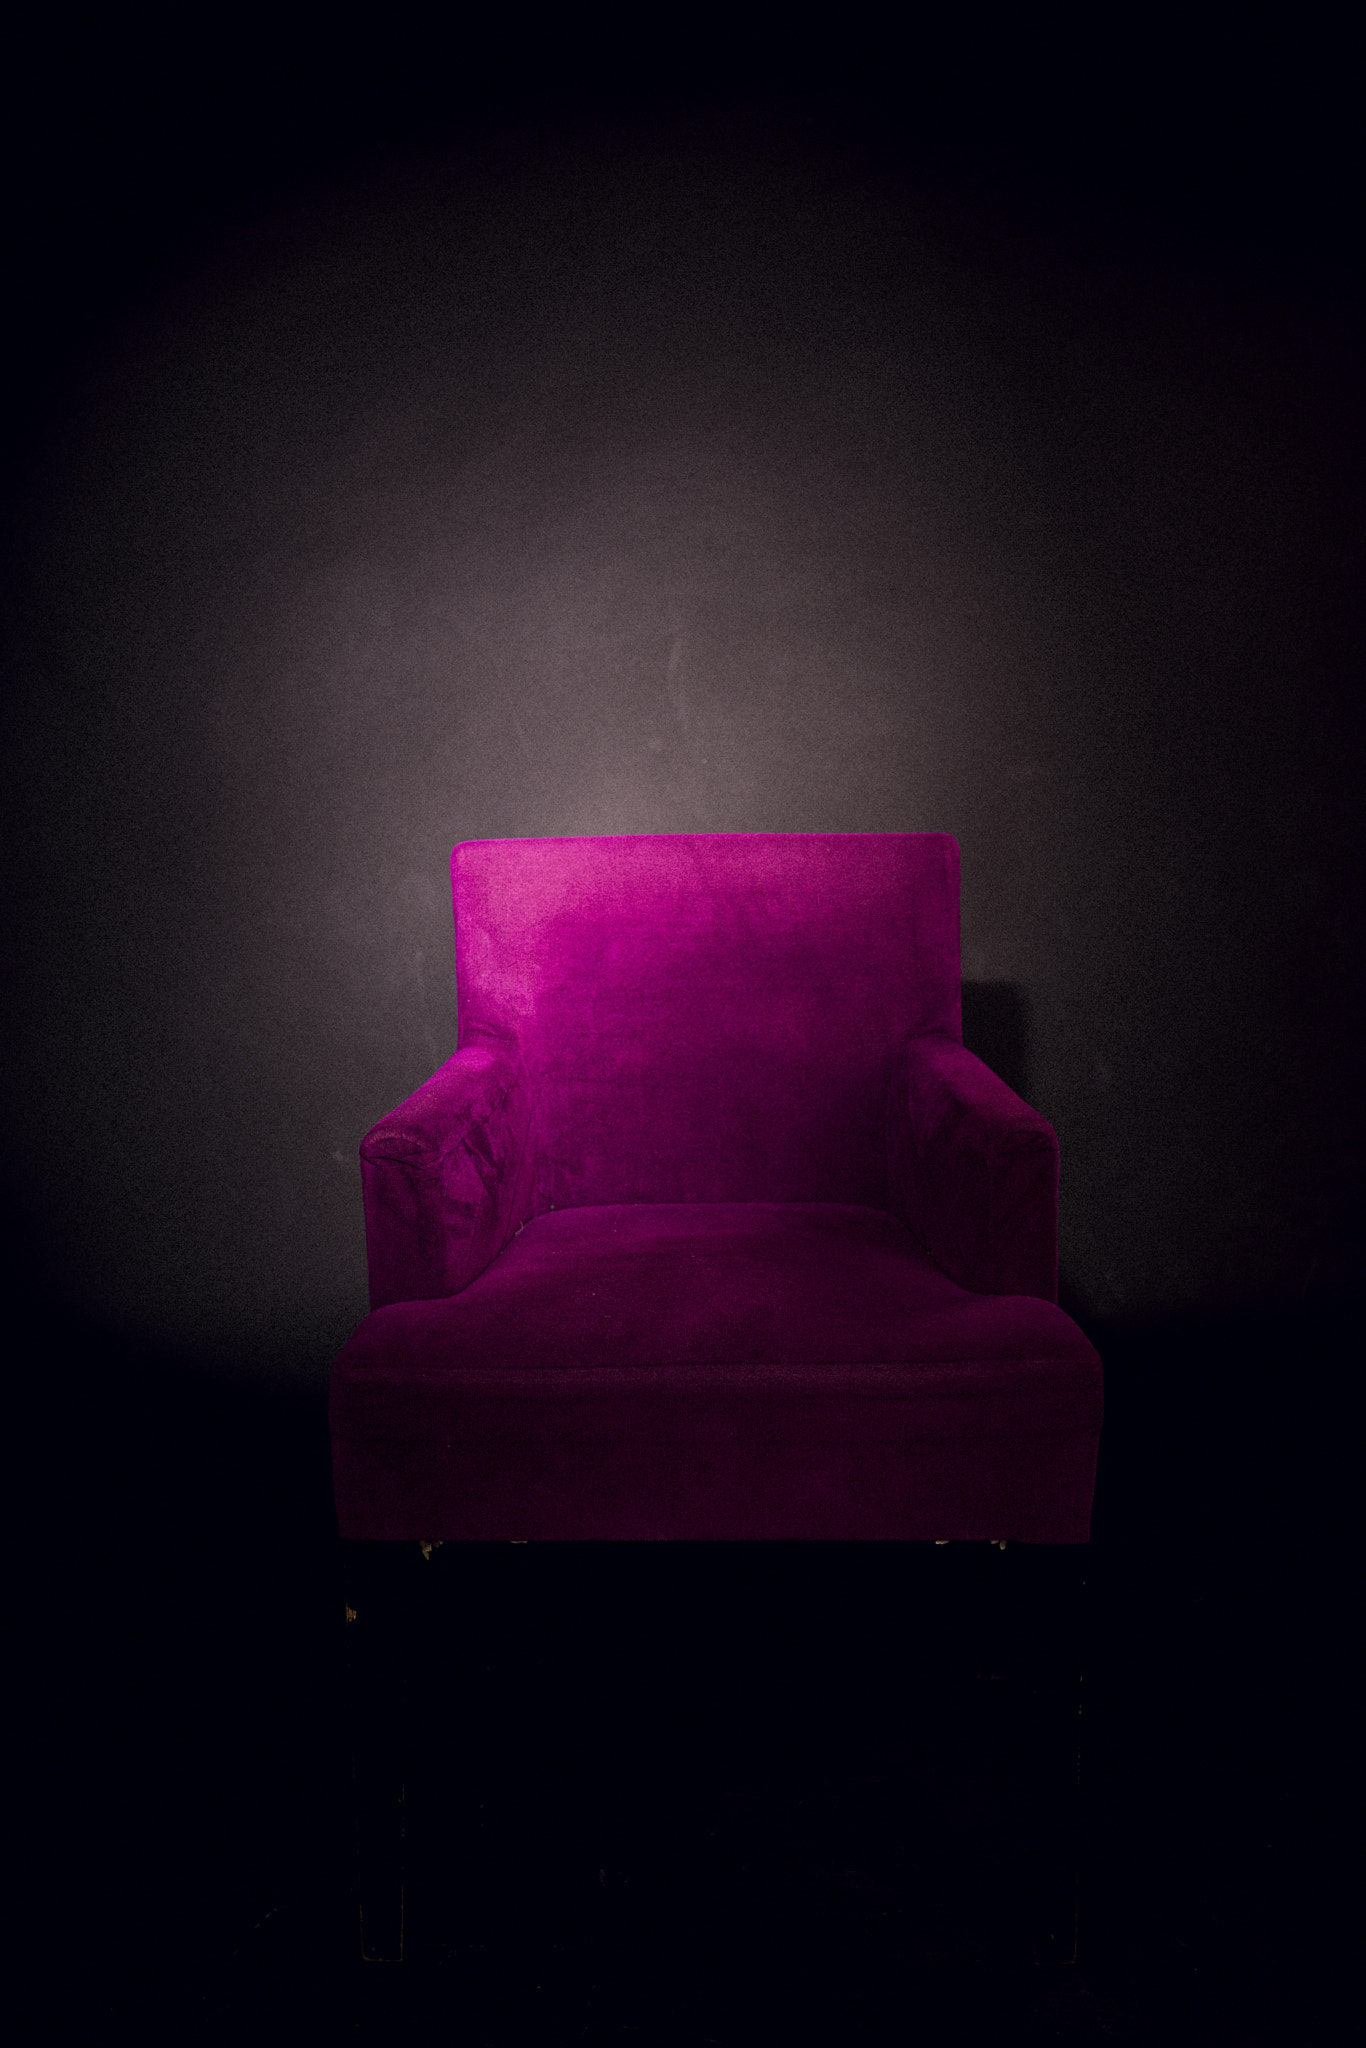 Sony a7 II sample photo. Yup - purple chair photography